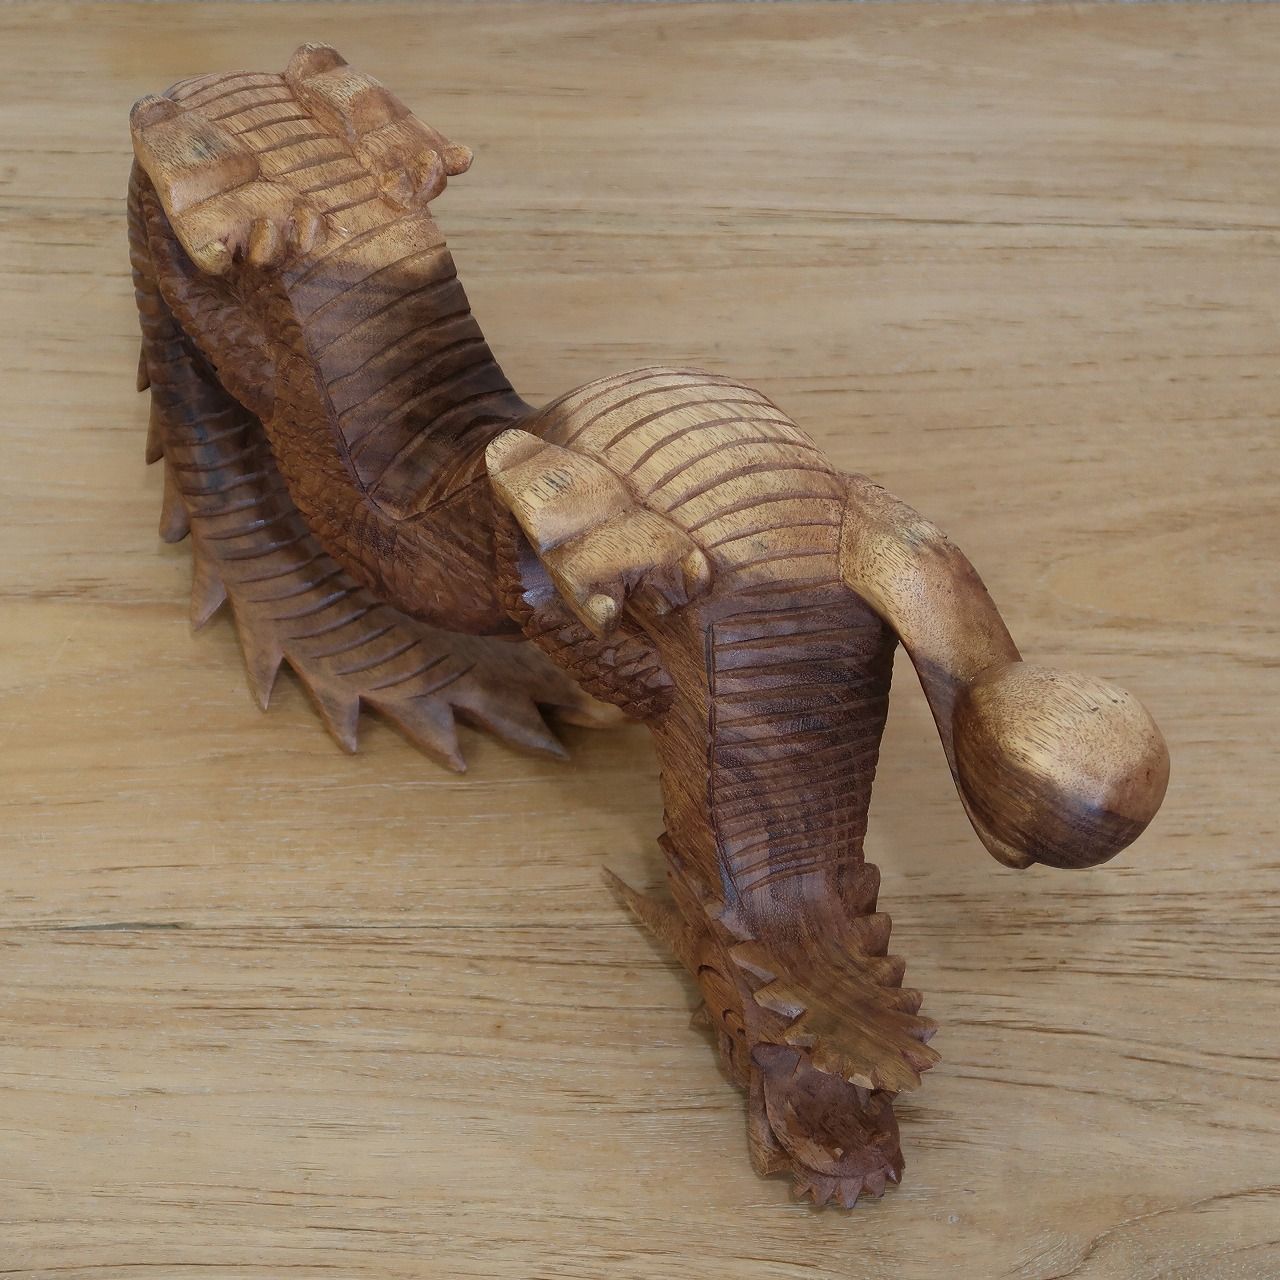 ドラゴンの木彫り 龍の木彫り スワール無垢材 左向き 40cm 竜の木彫り 